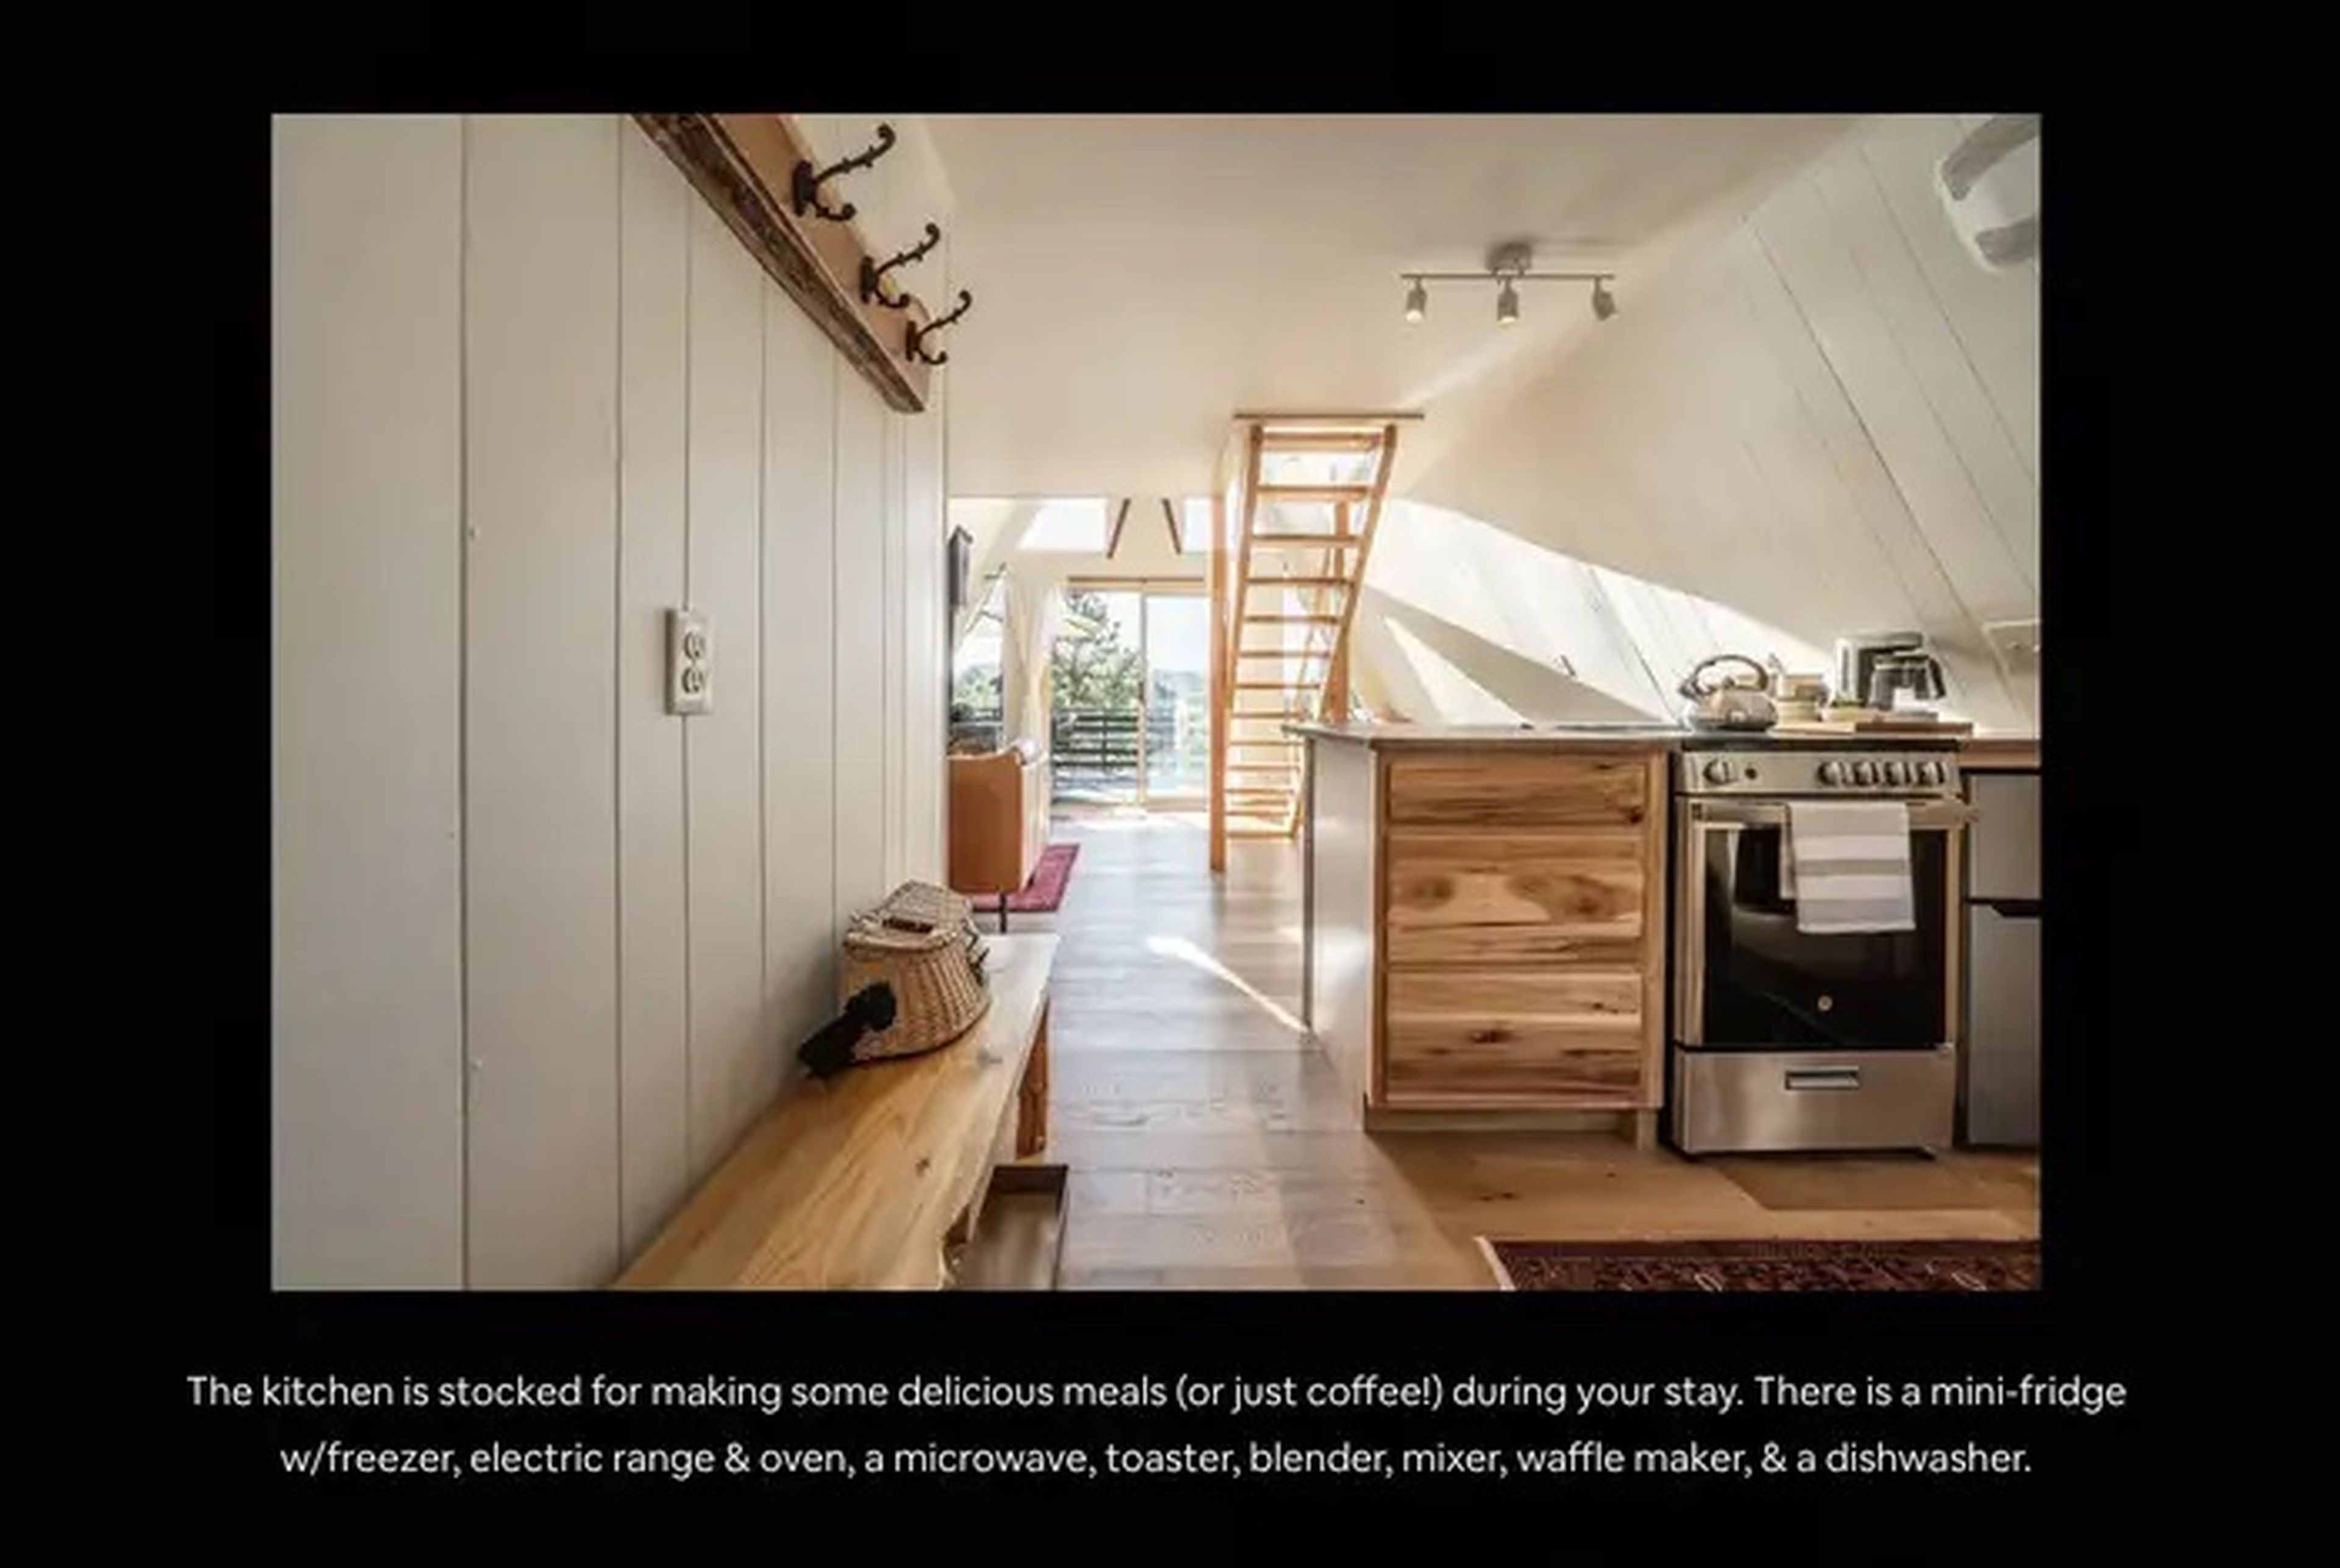 Un ejemplo de anuncio detallado de Mosher diseñado para posicionarse en lo alto de la página de Airbnb.